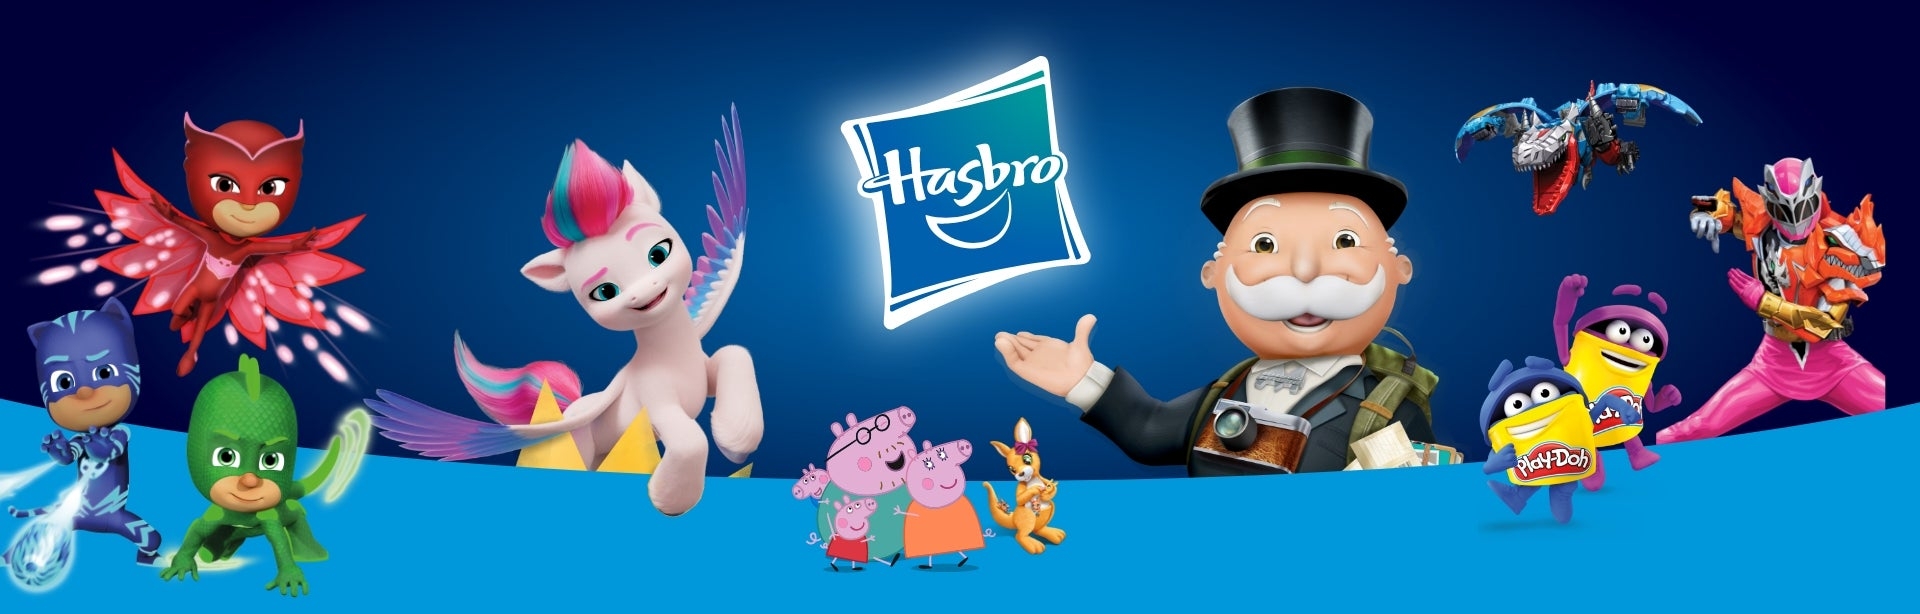 Hasbro Play Oyunları ve Karakterleri